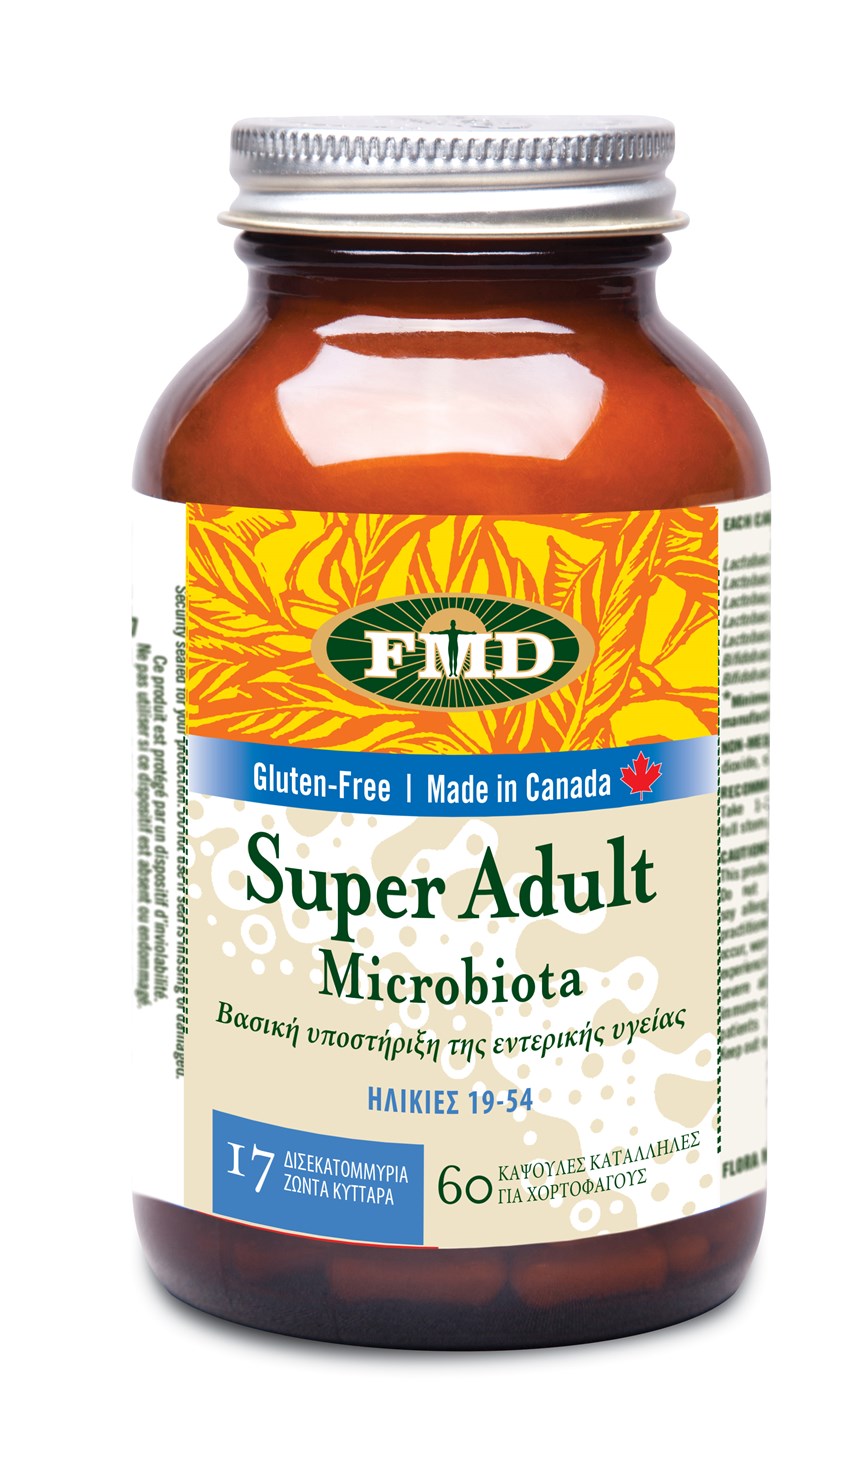 Super Adult Microbiota